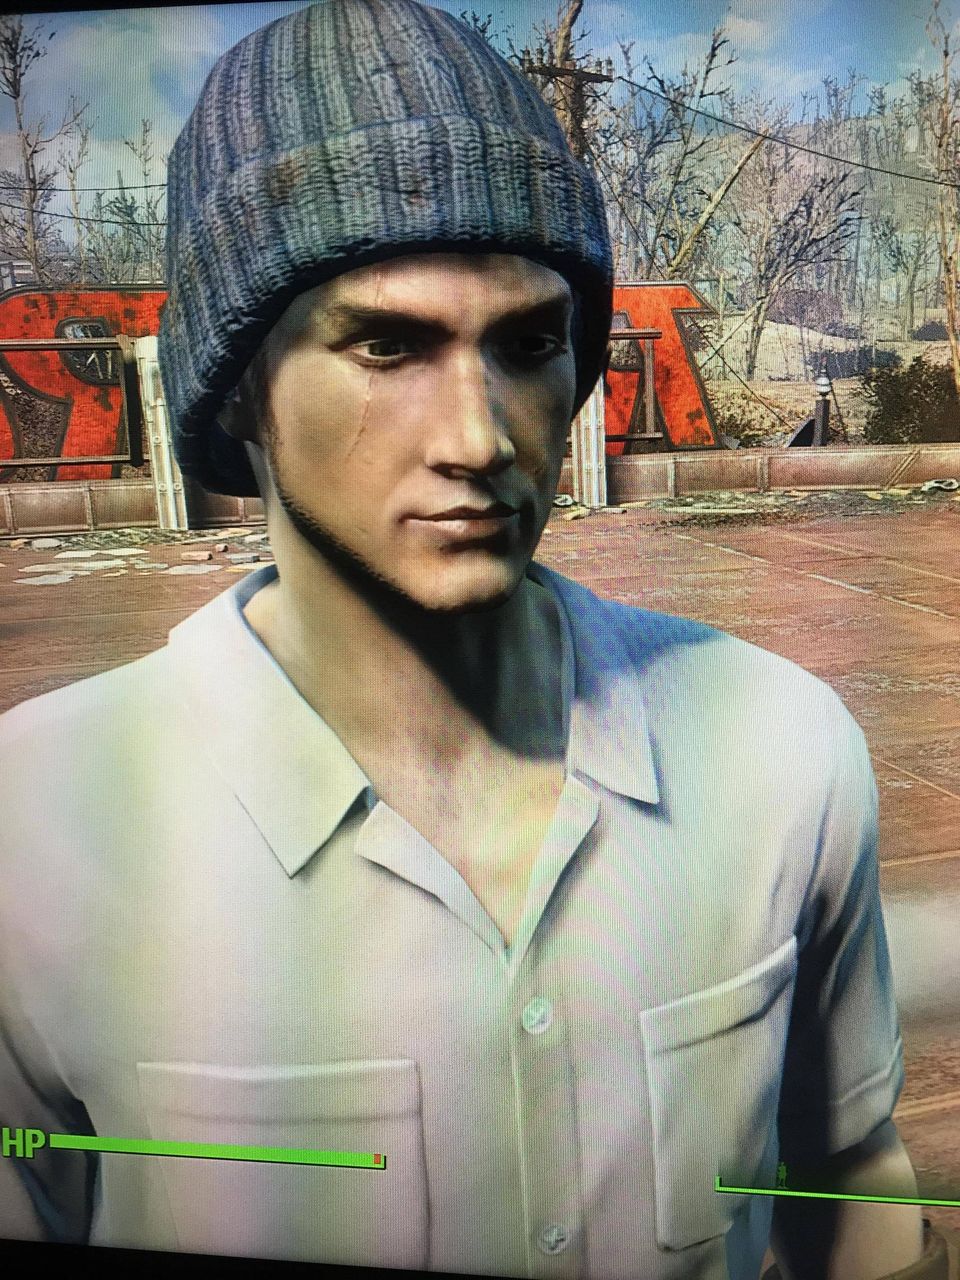 Ps4 Xbox Fallout4 キャラクリ総合 Fo4 1 3 ゲーム画像倉庫 モンハンワールド 今は